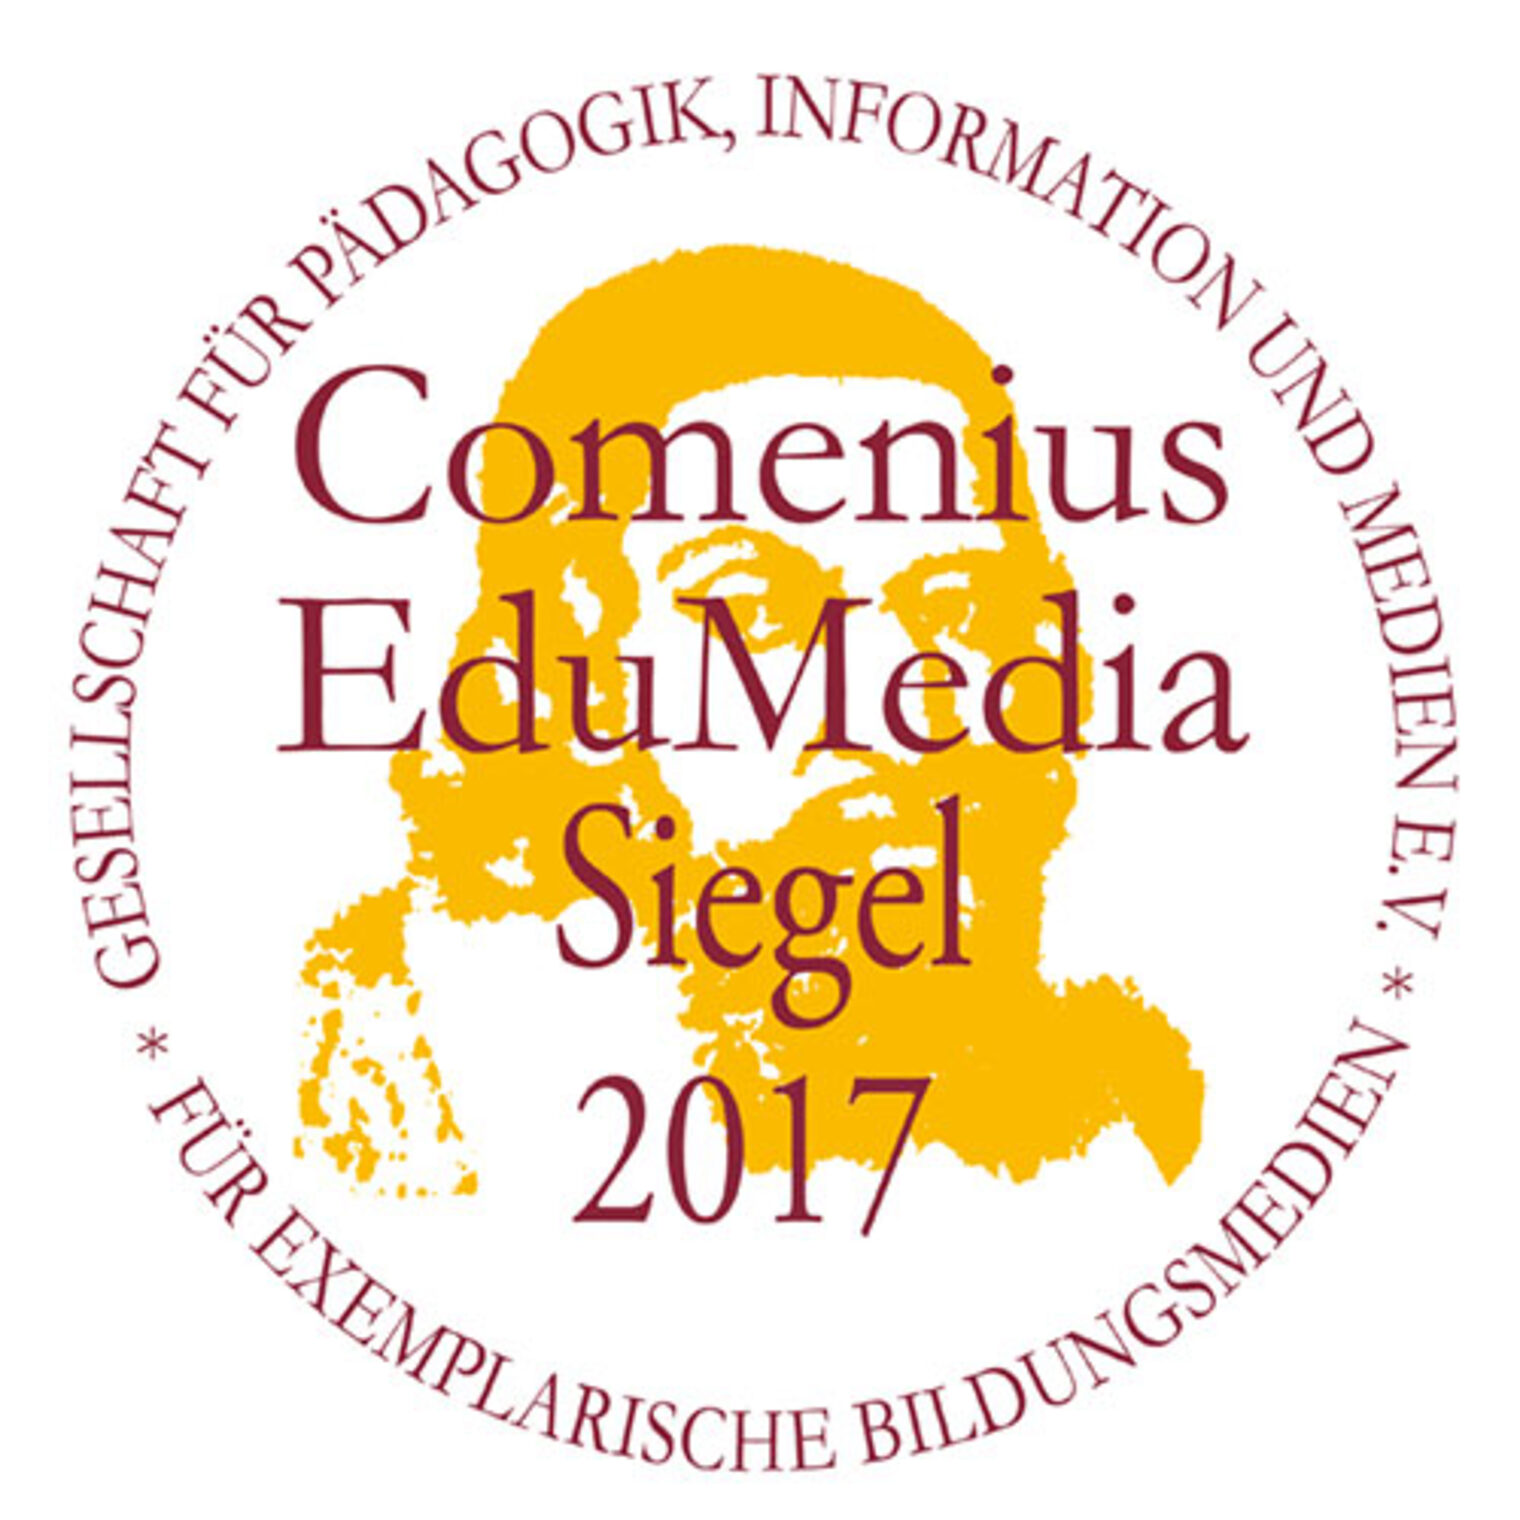 Comenius EduMedia Siegel 2017